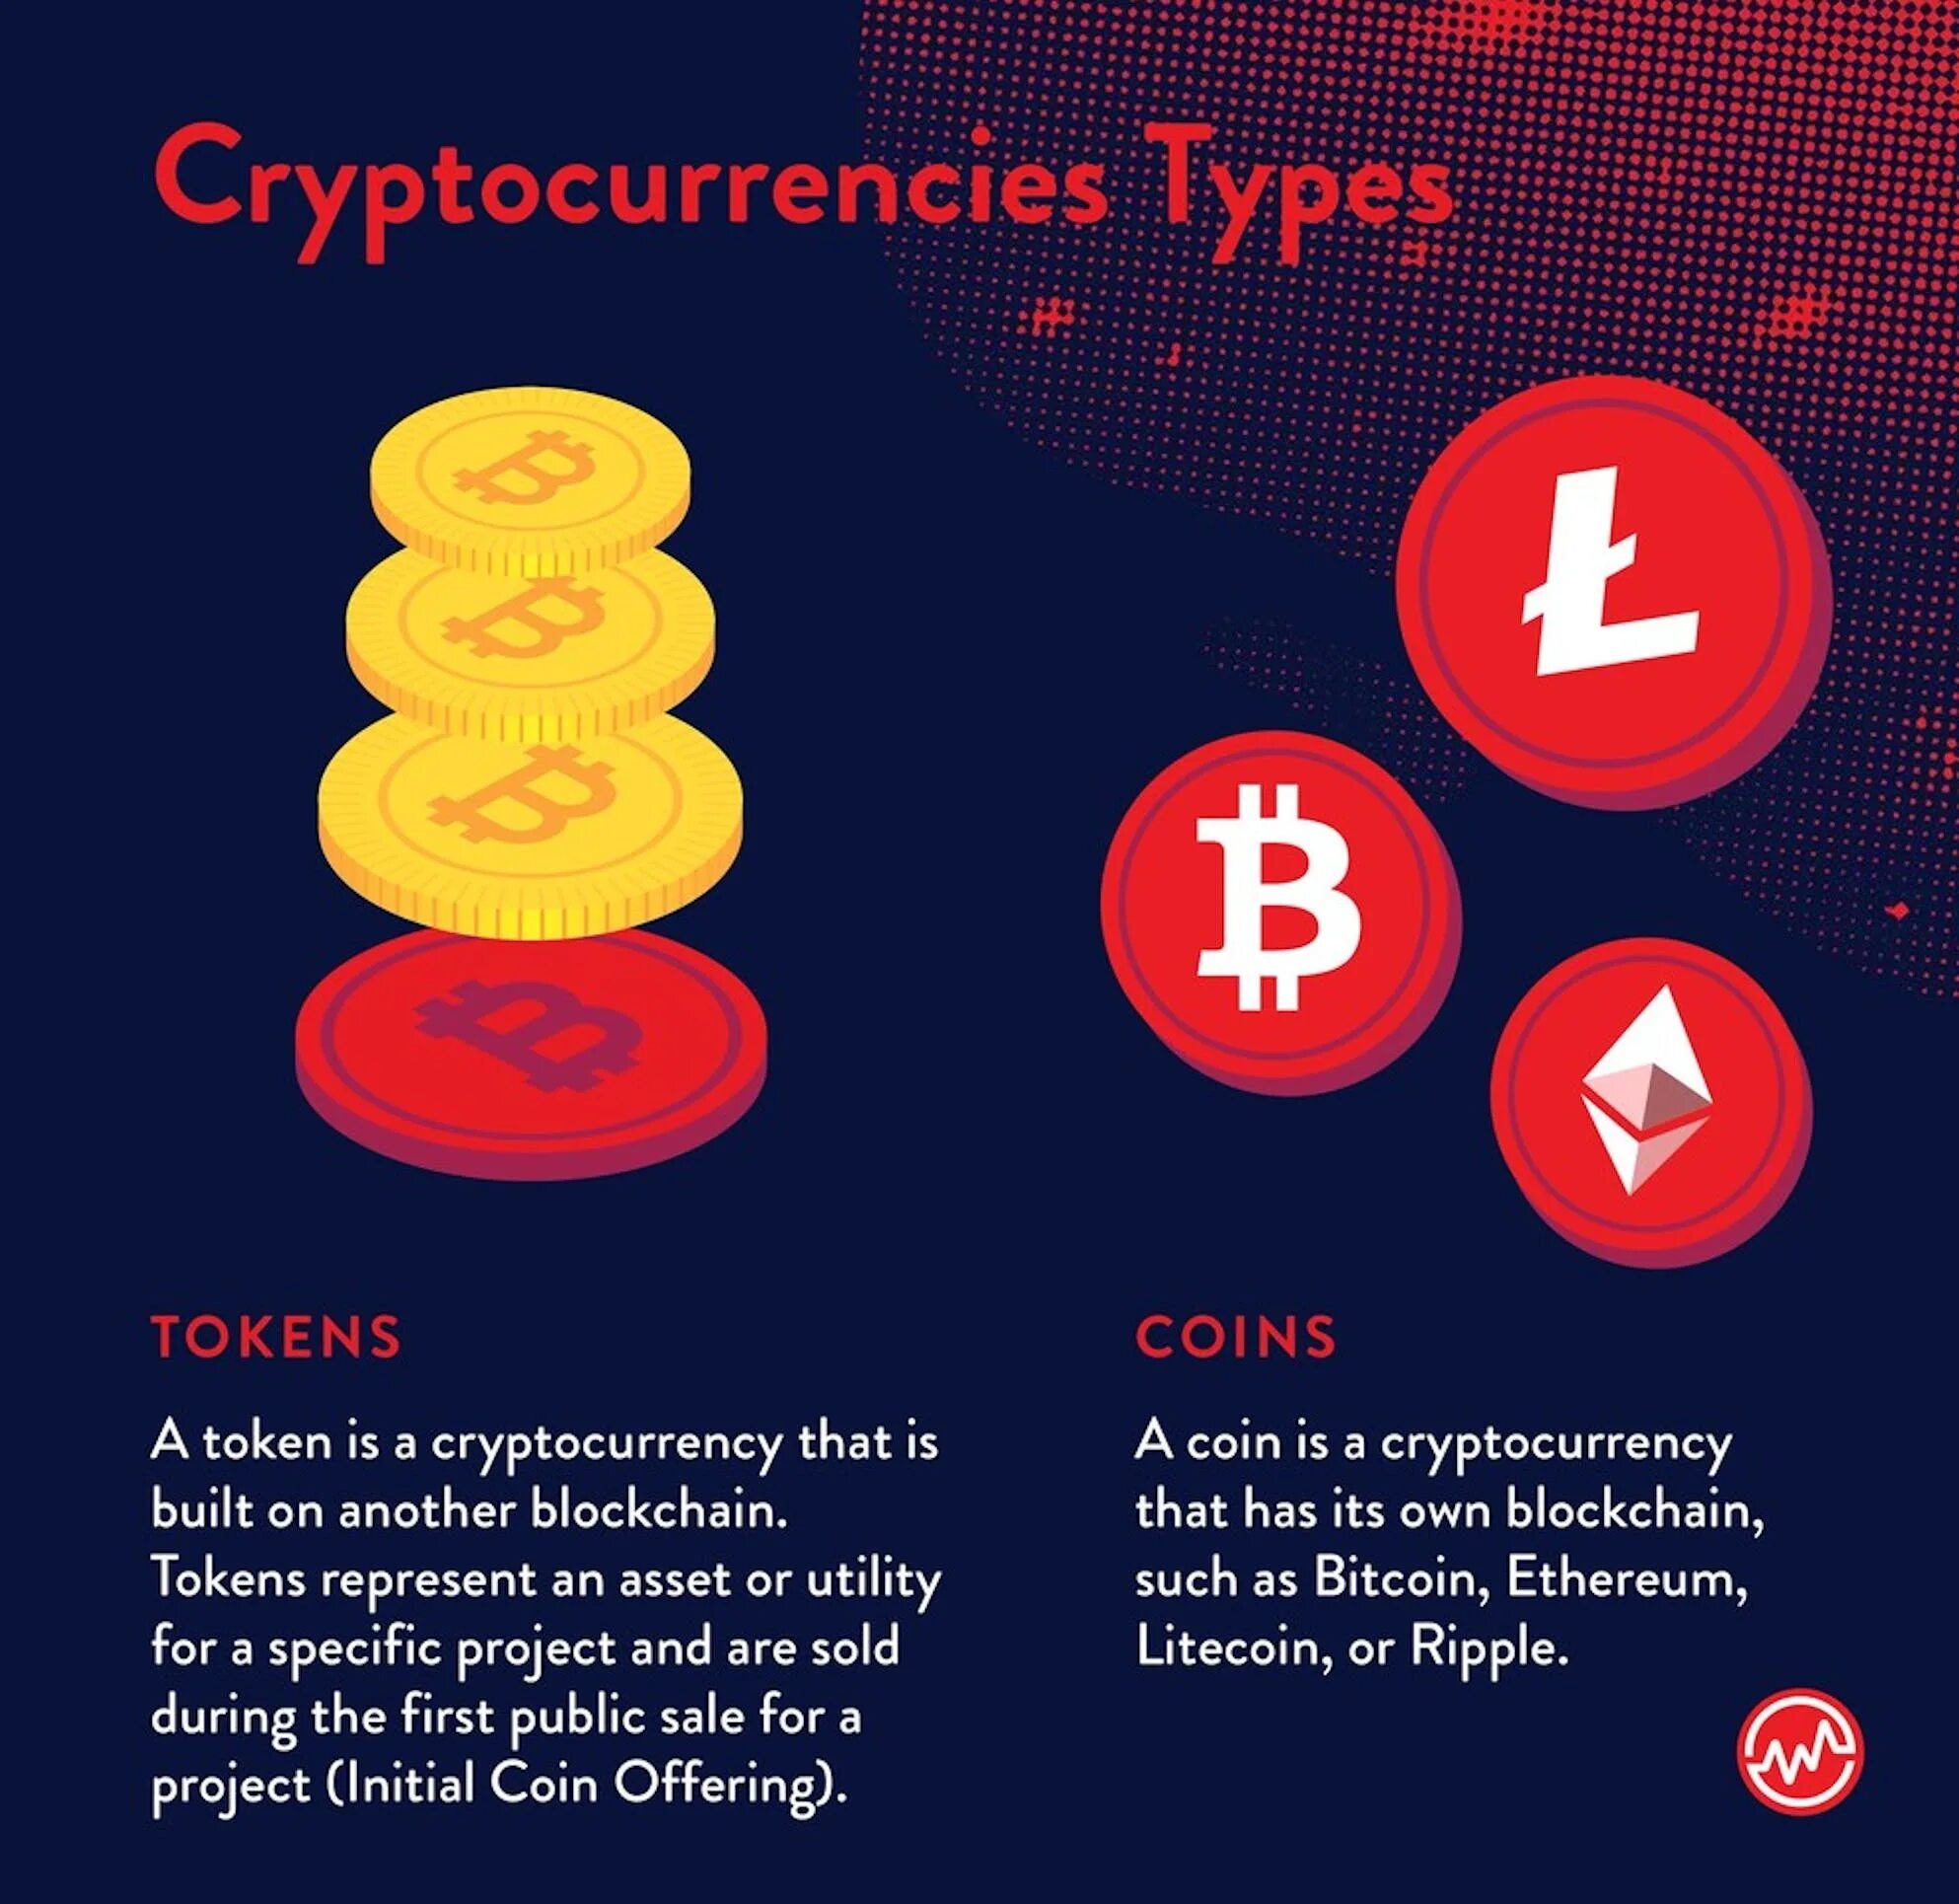 Currency types. Разновидности криптовалюты. Типы криптовалют. Виды биткоина. Цифровые валюты виды.